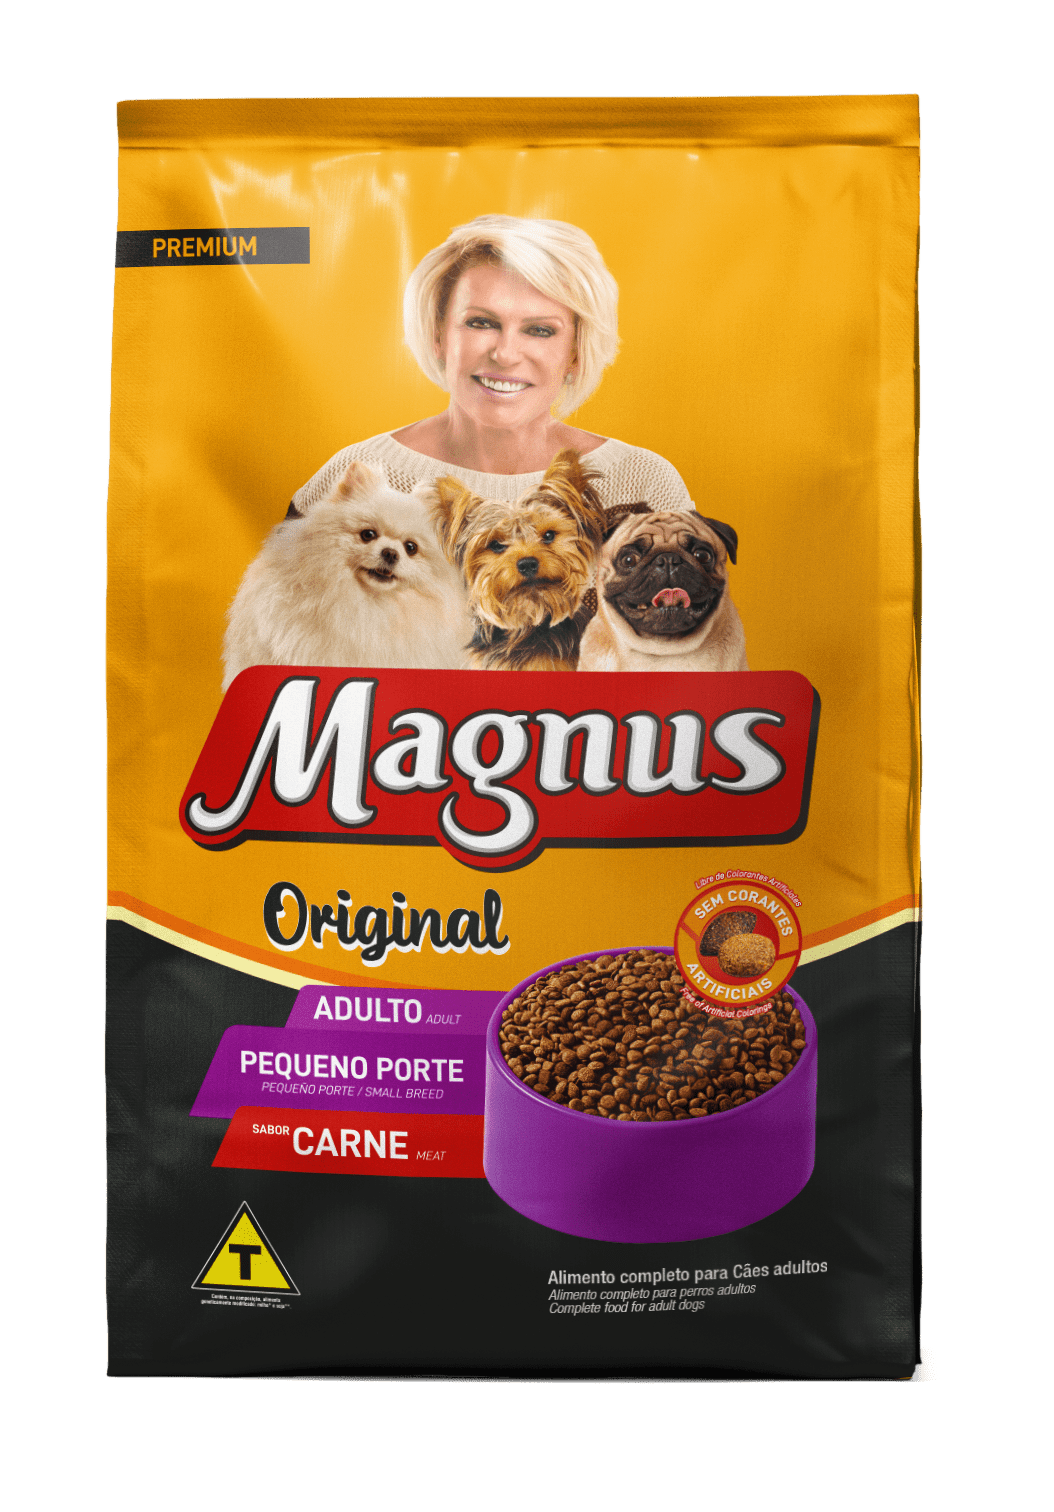 Magnus Premium Original Adult Dogs Small Breed Beef Flavor